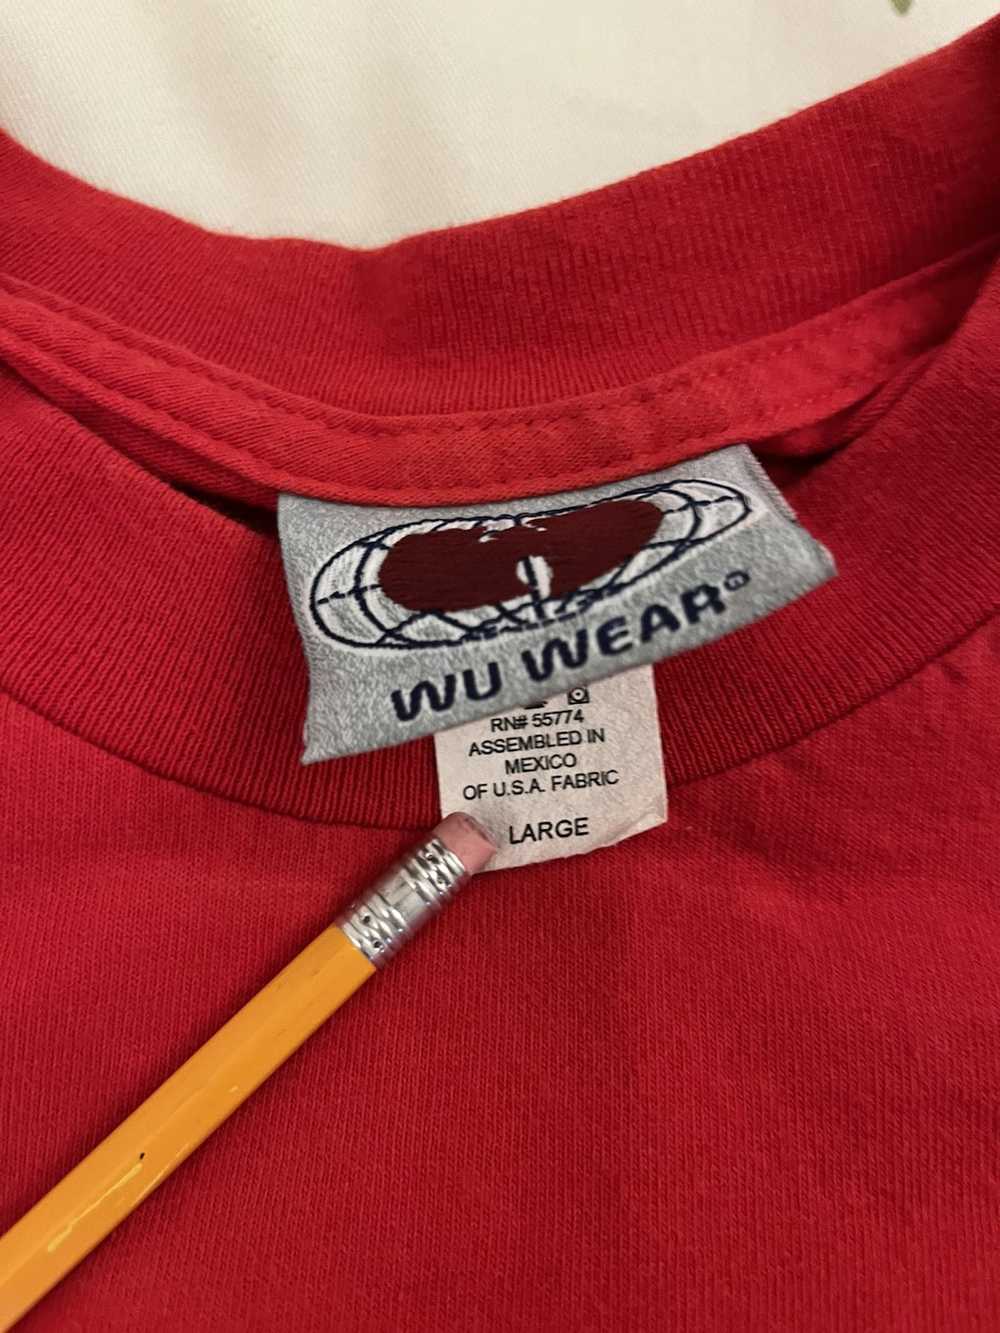 Vintage × Wu Wear Vintage 90s Wu Wear logo shirt - image 3